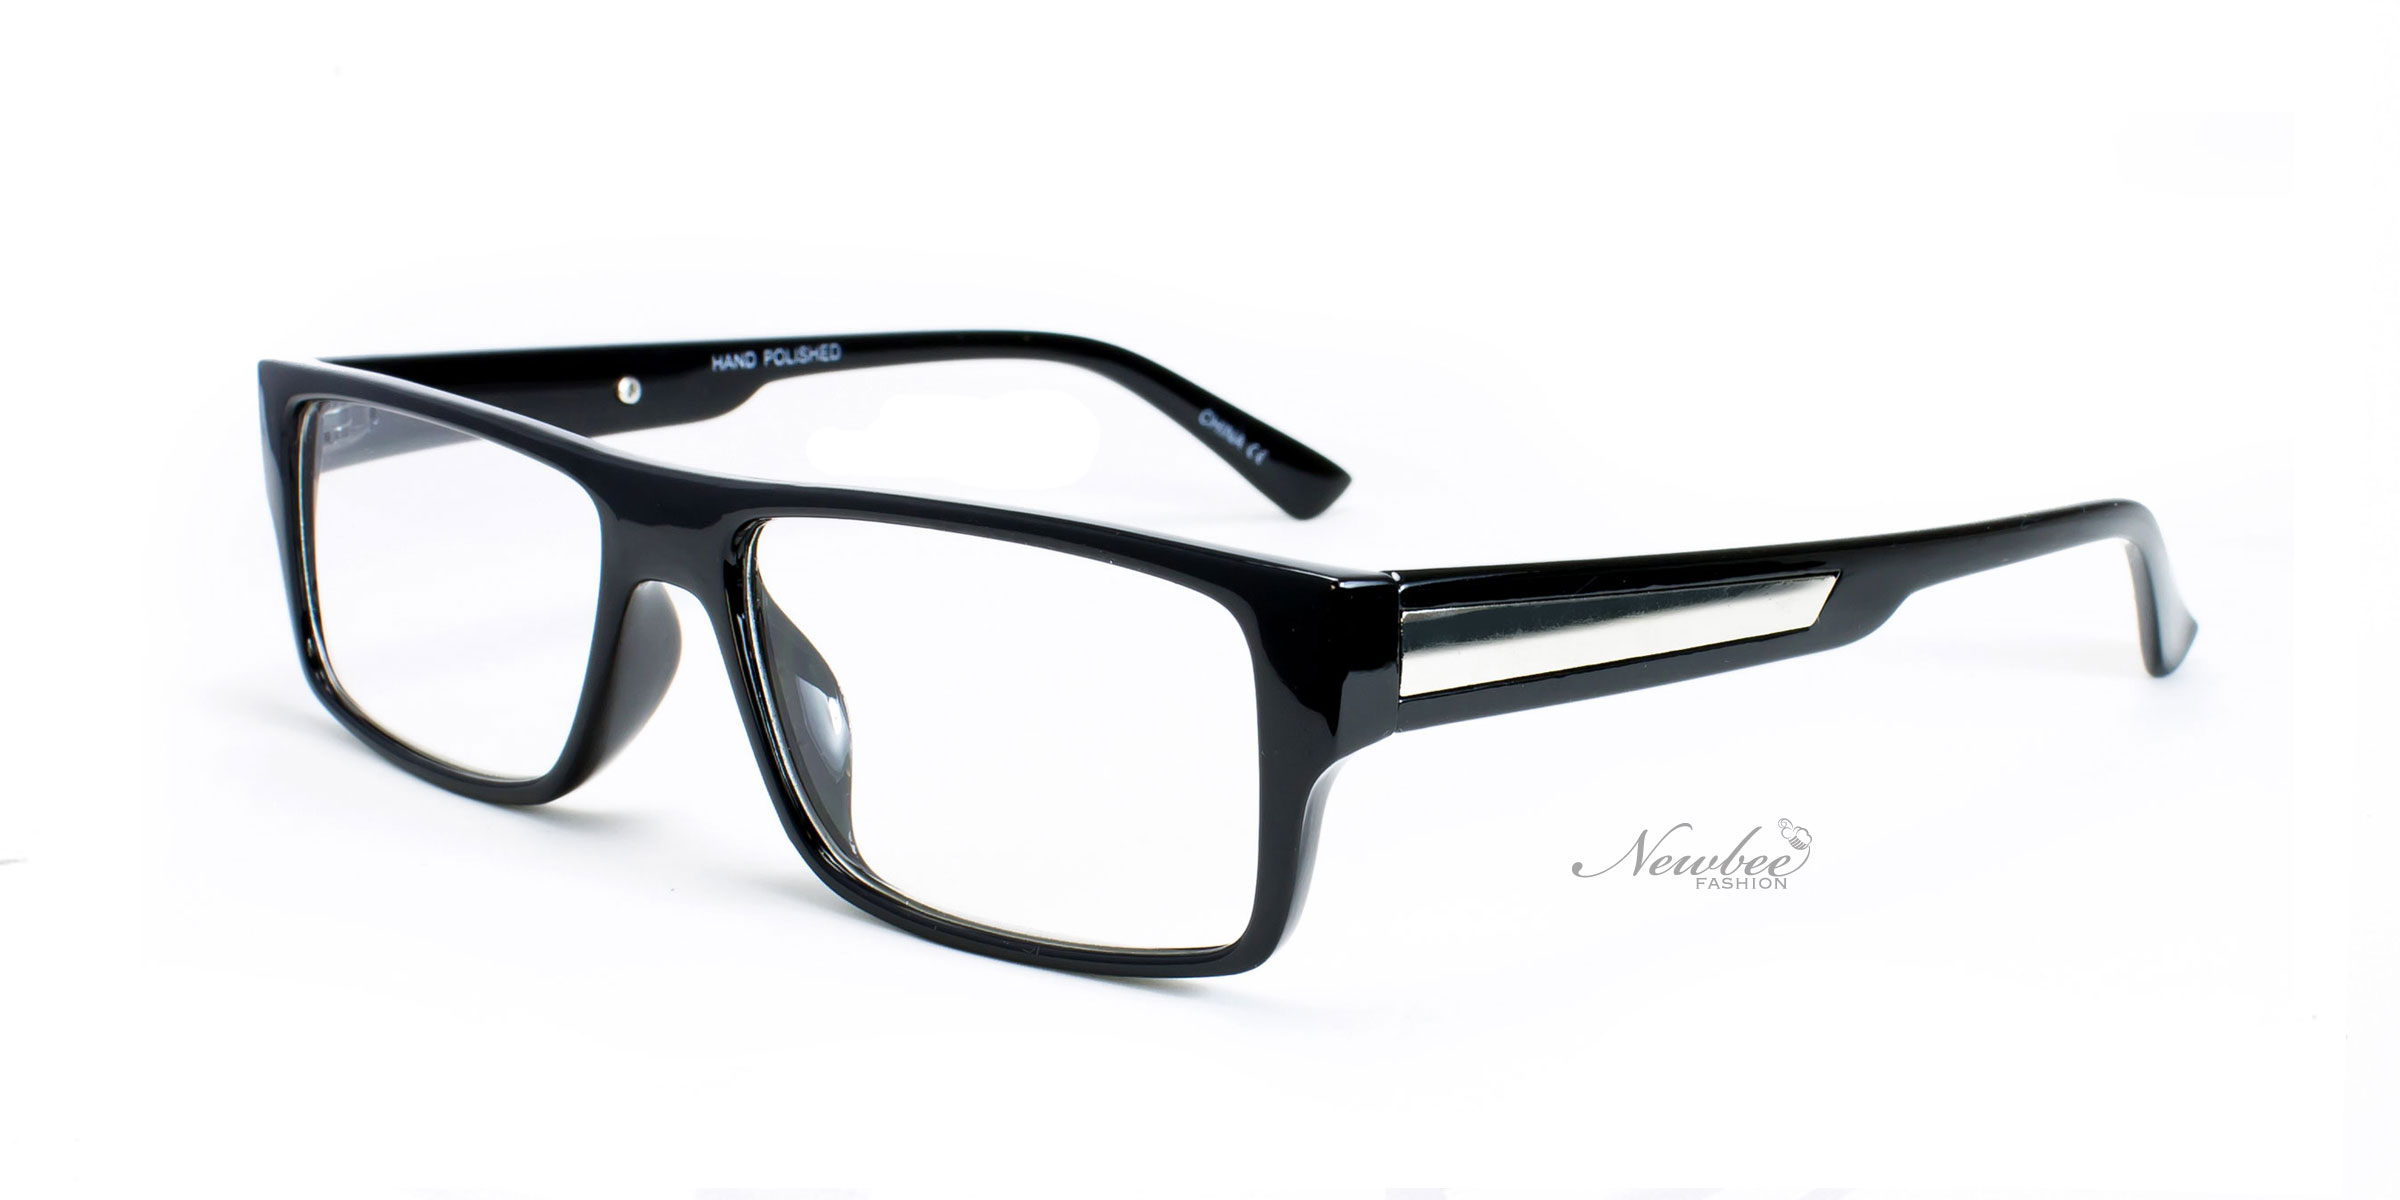 Classic Glossy Black Frame With Clear Non Prescription Lens Retro inside Fashion Glasses Non Prescription for Your choice